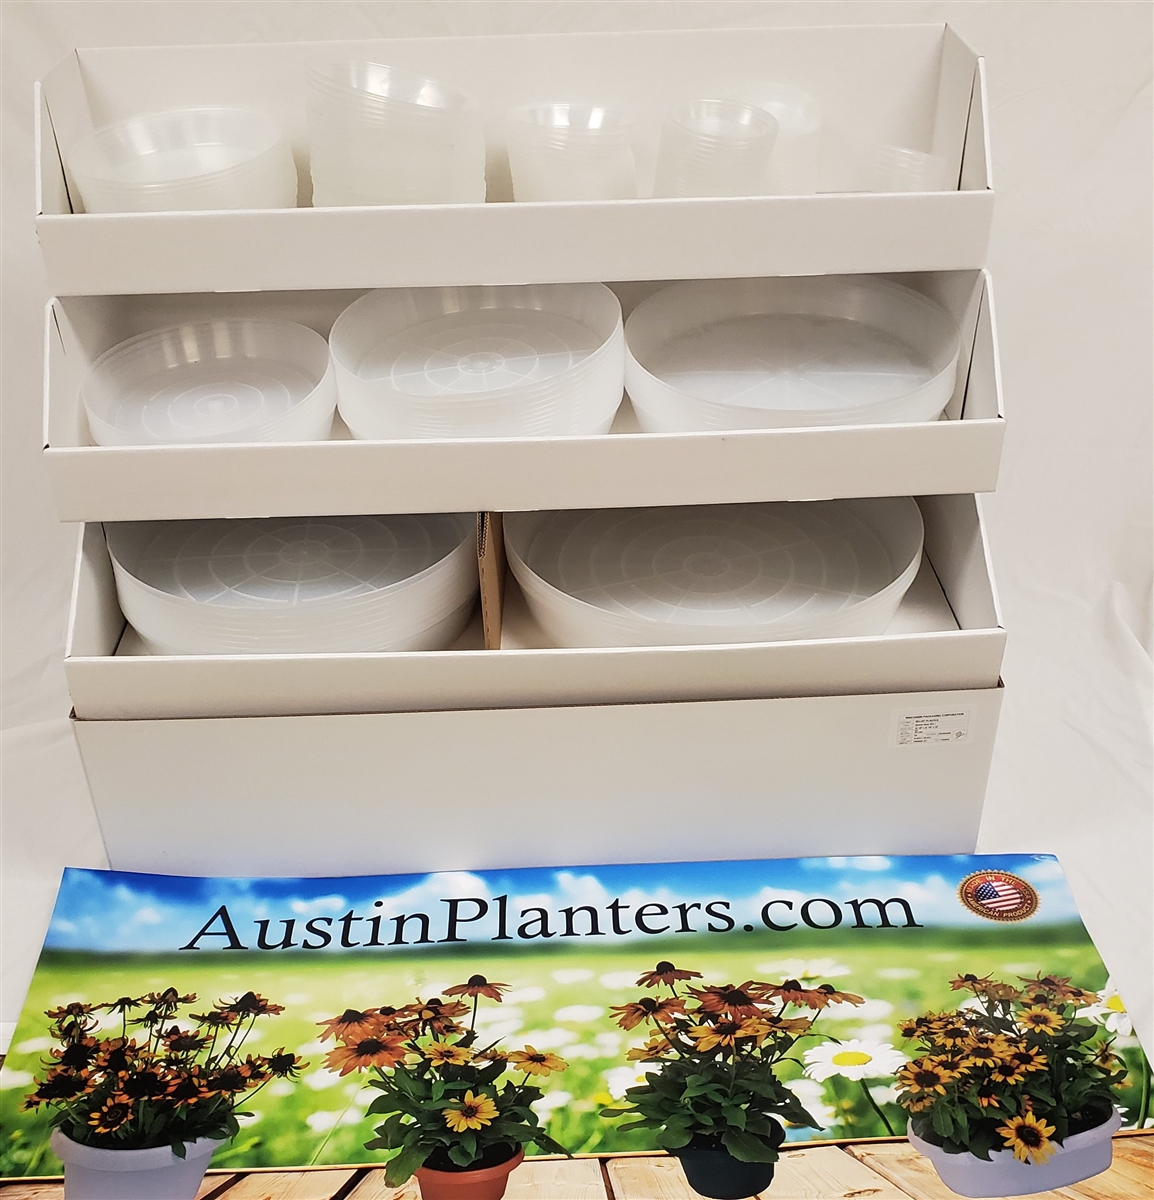 Beloit Display Planter Austin SaucerRetail | Plastics